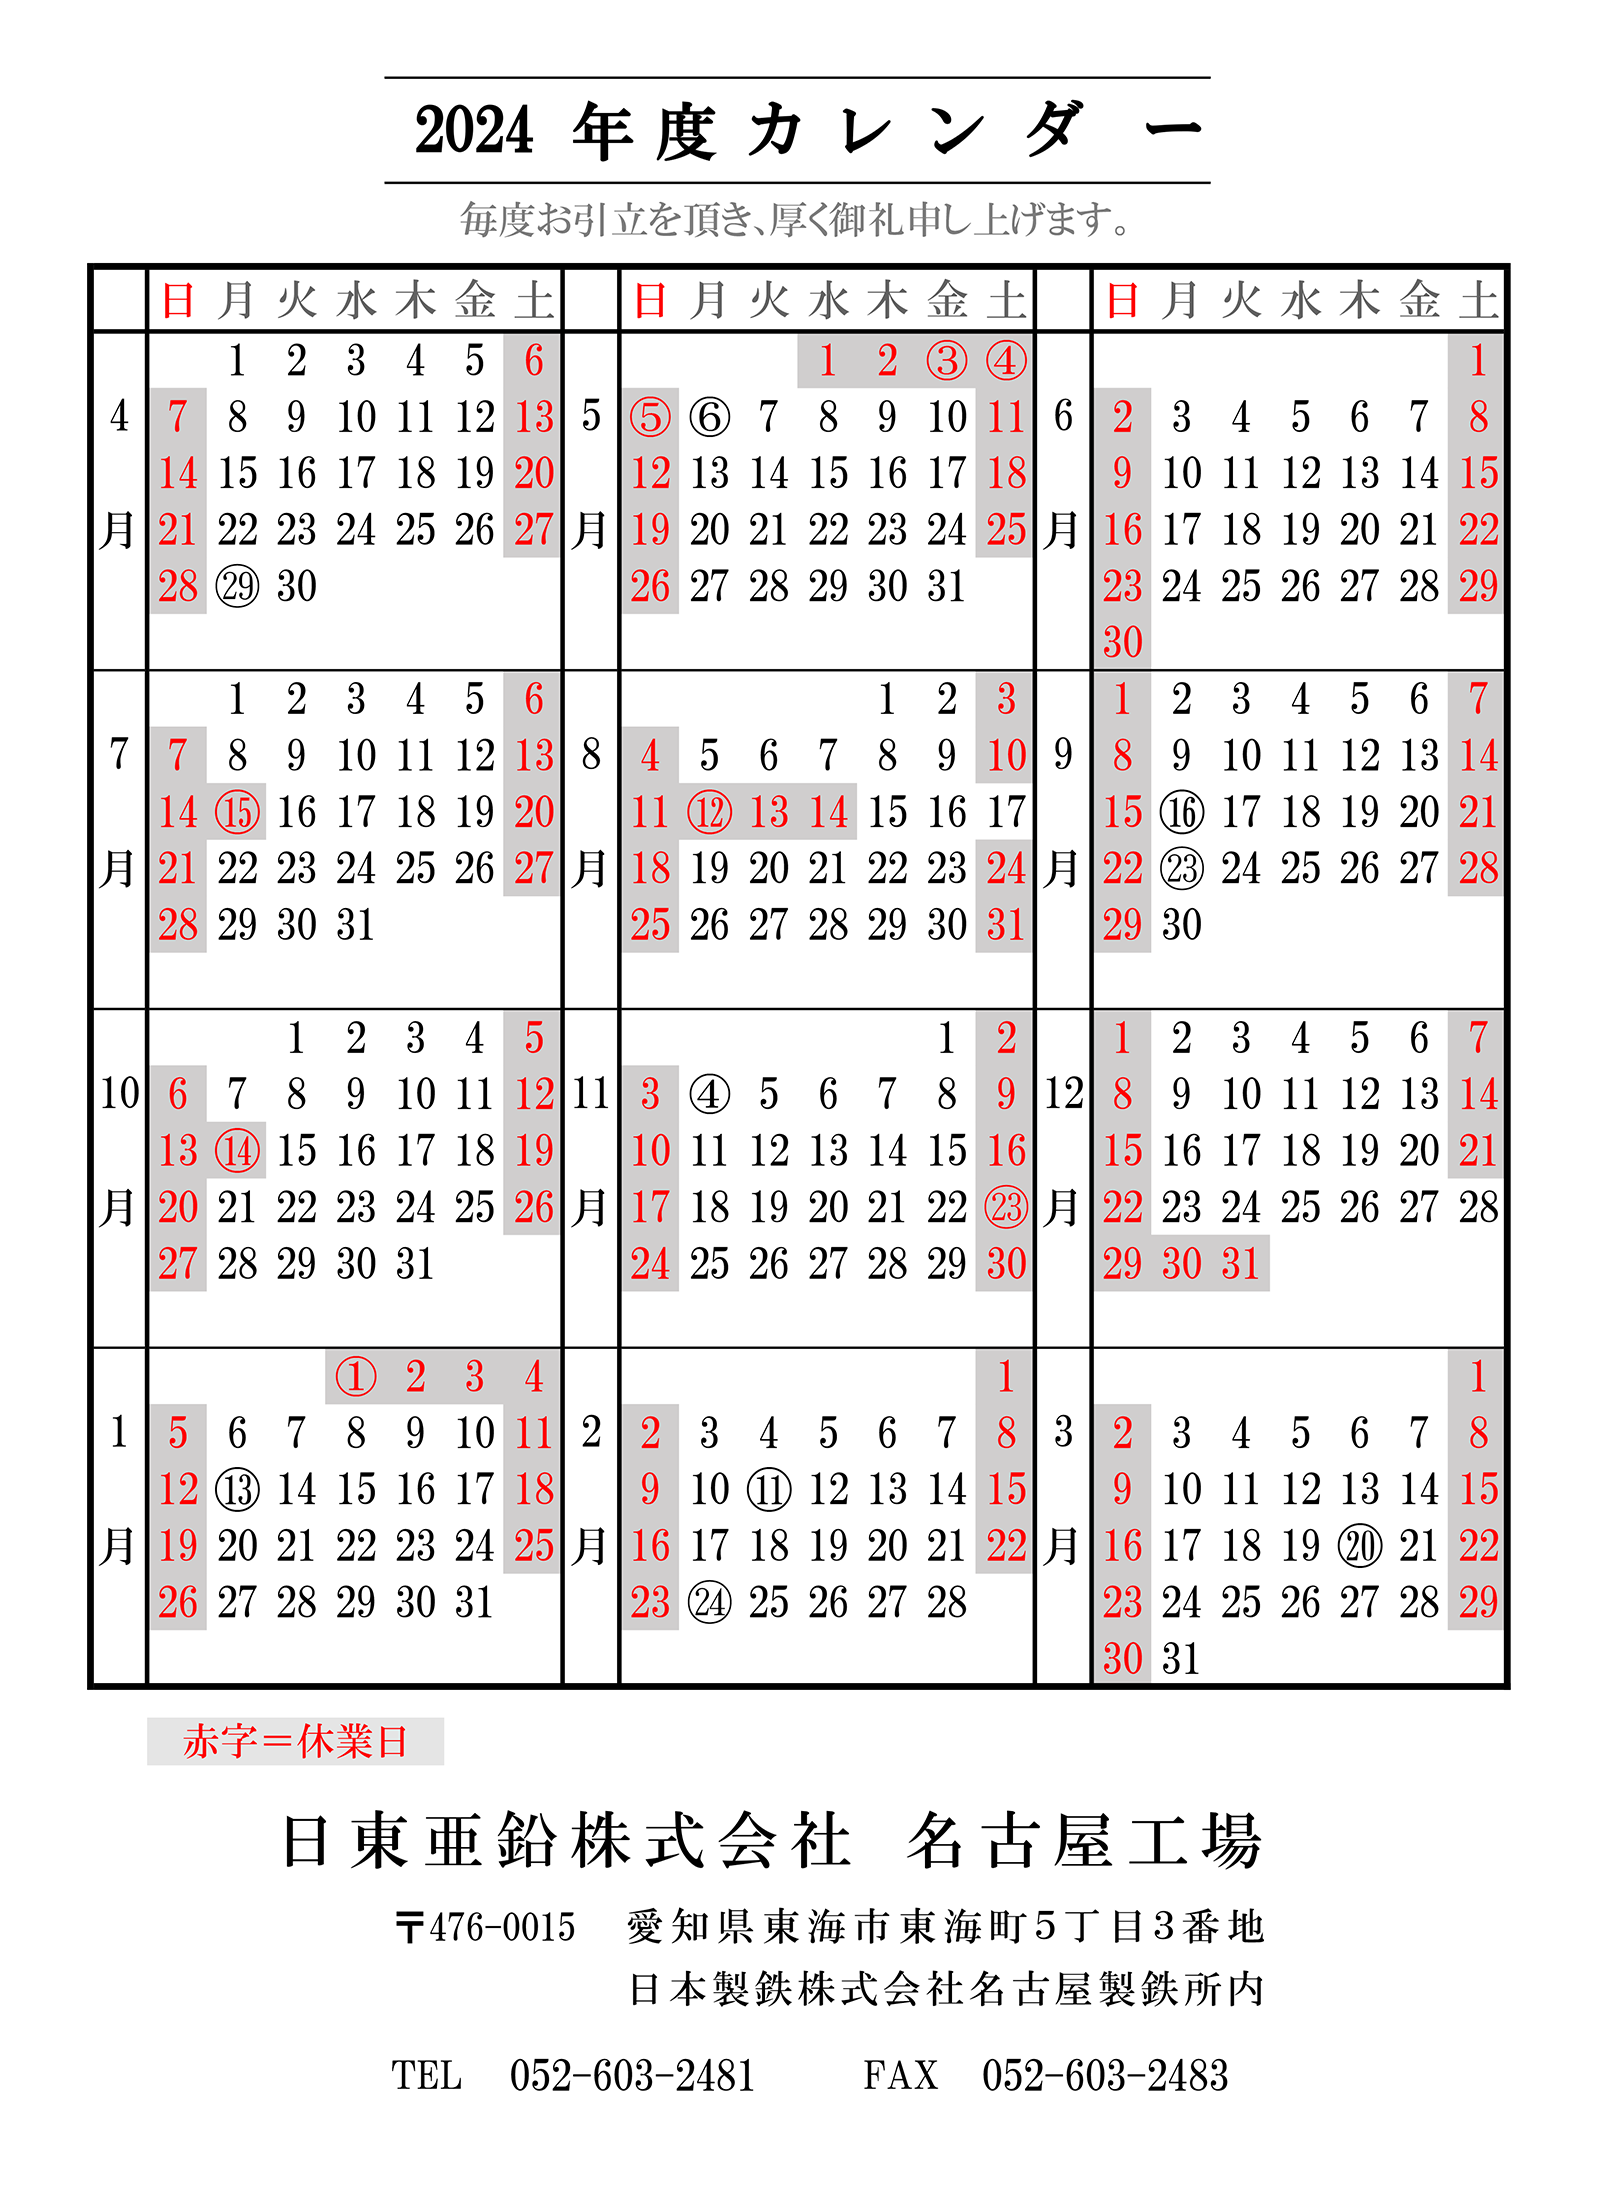 2024年度 名古屋工場カレンダー